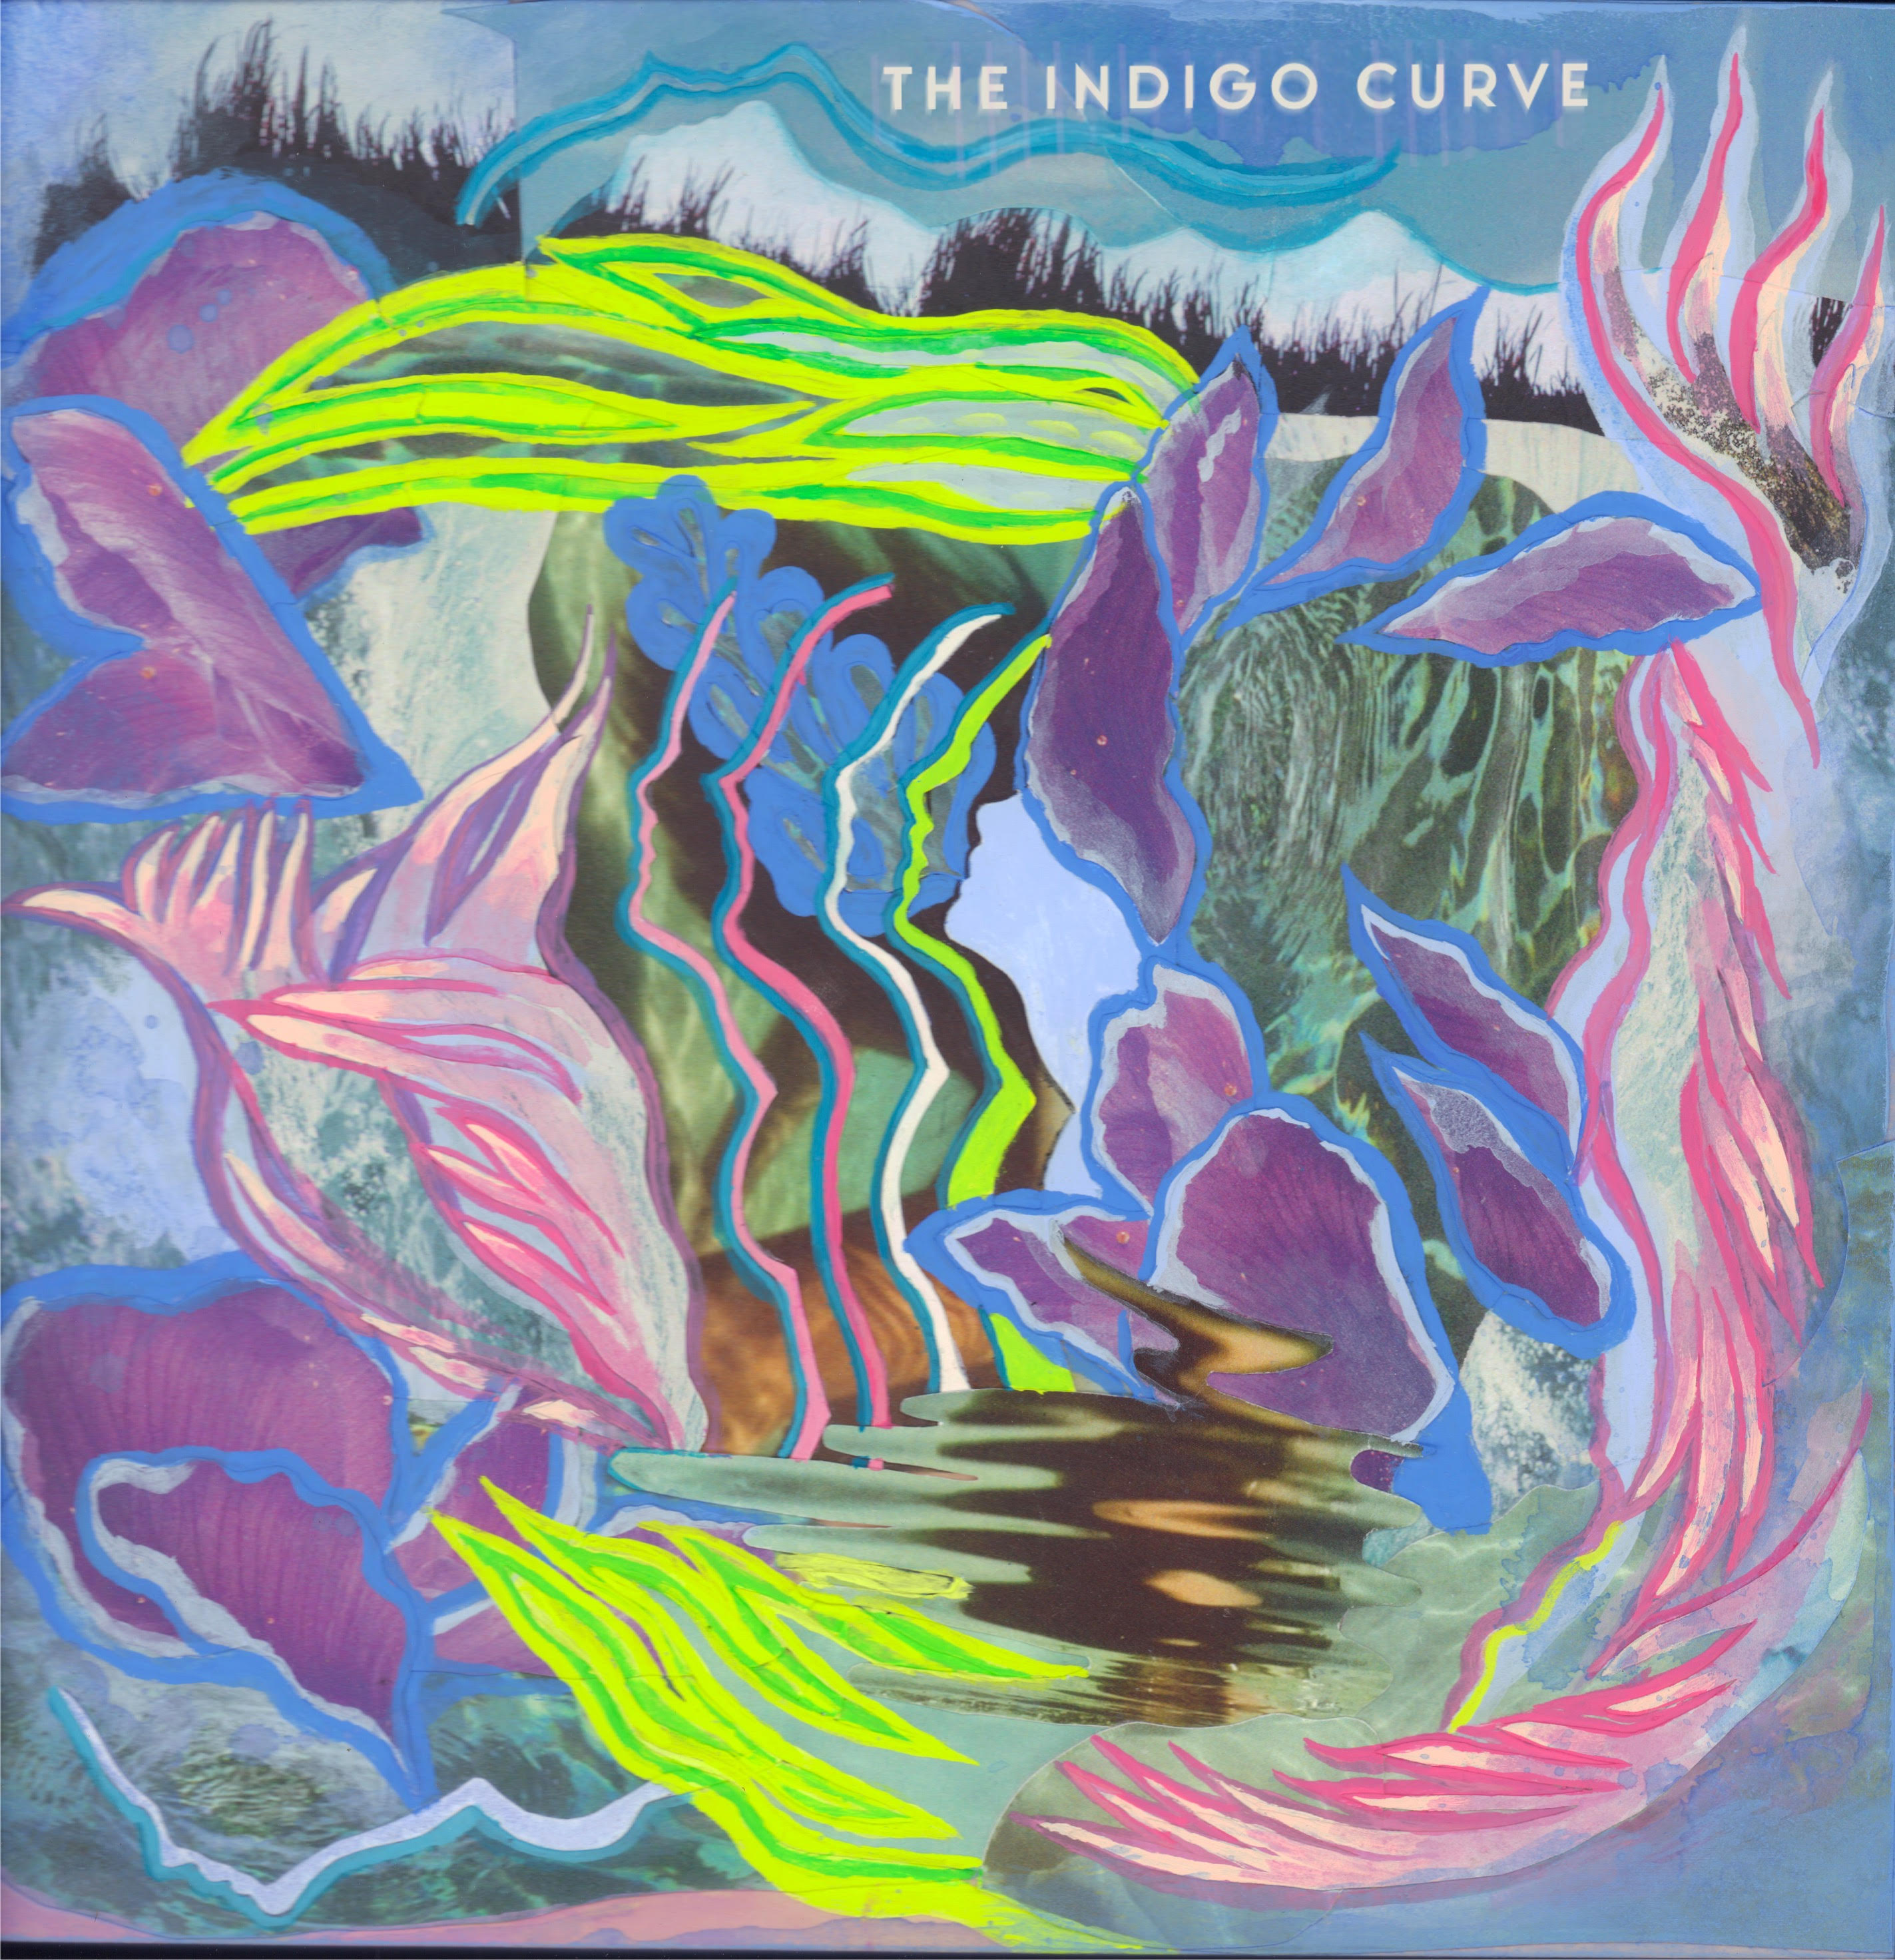 The Indigo Curve